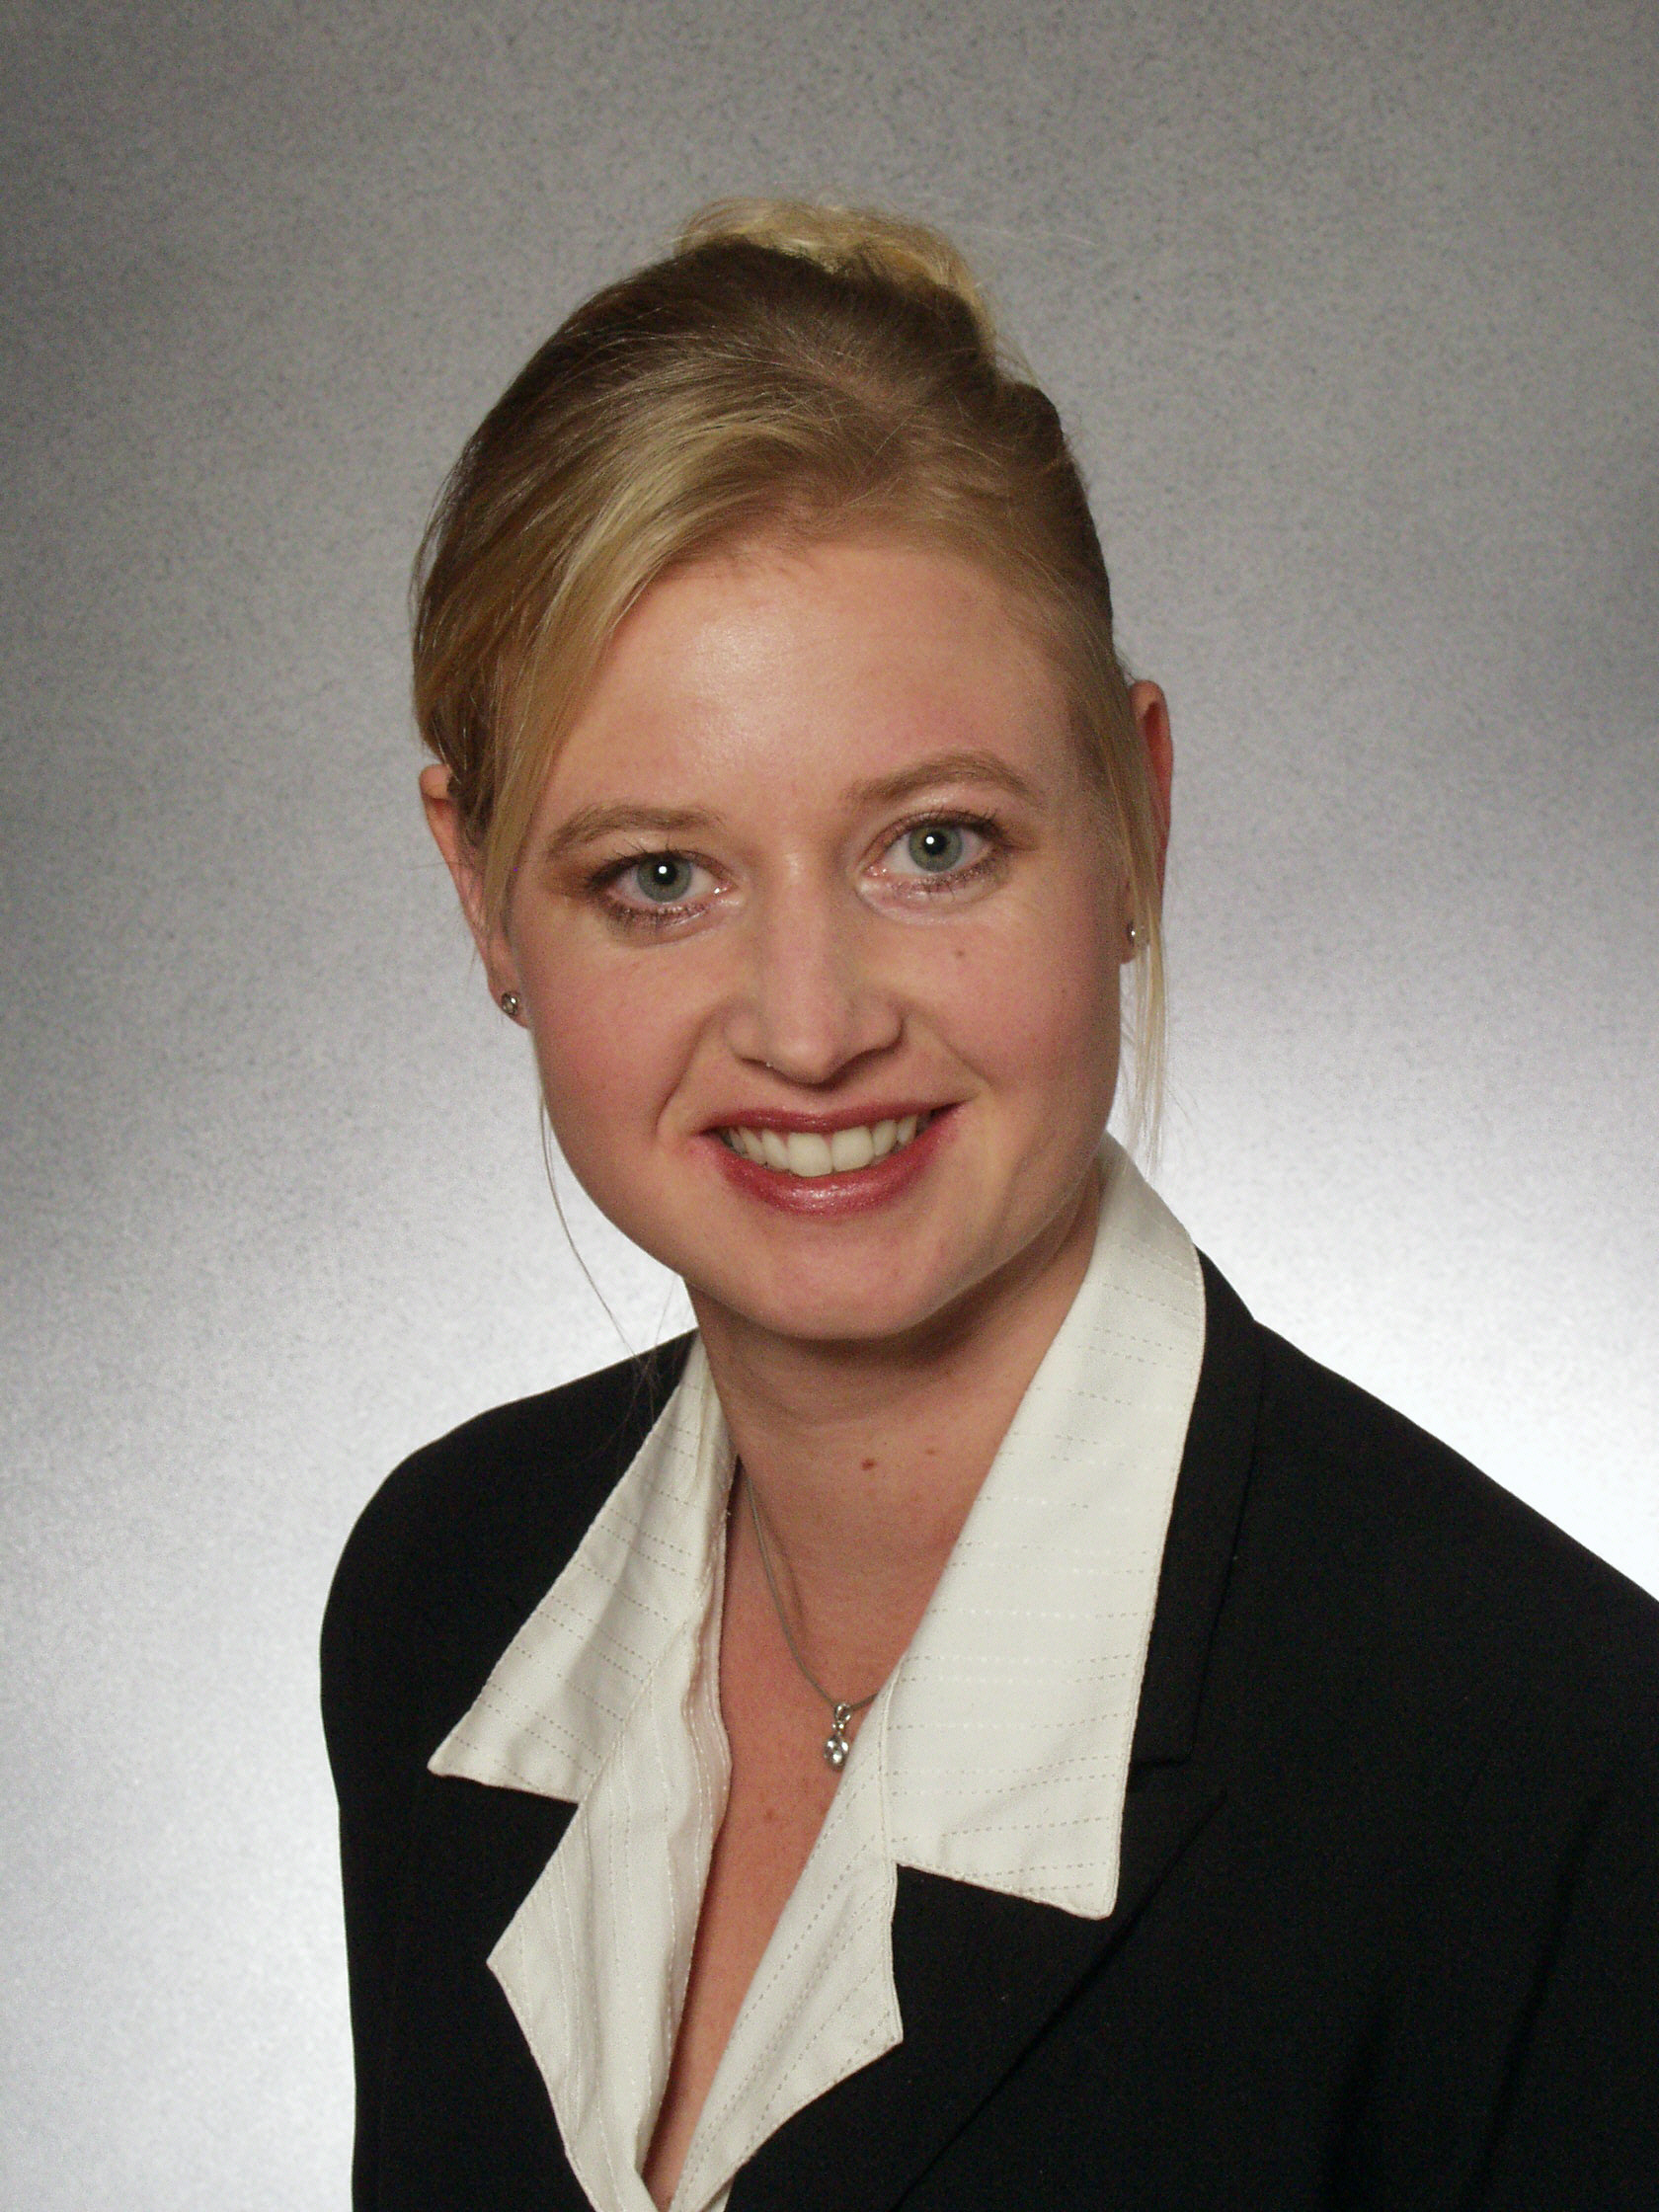 Dr.-Ing. Susanne Zibek